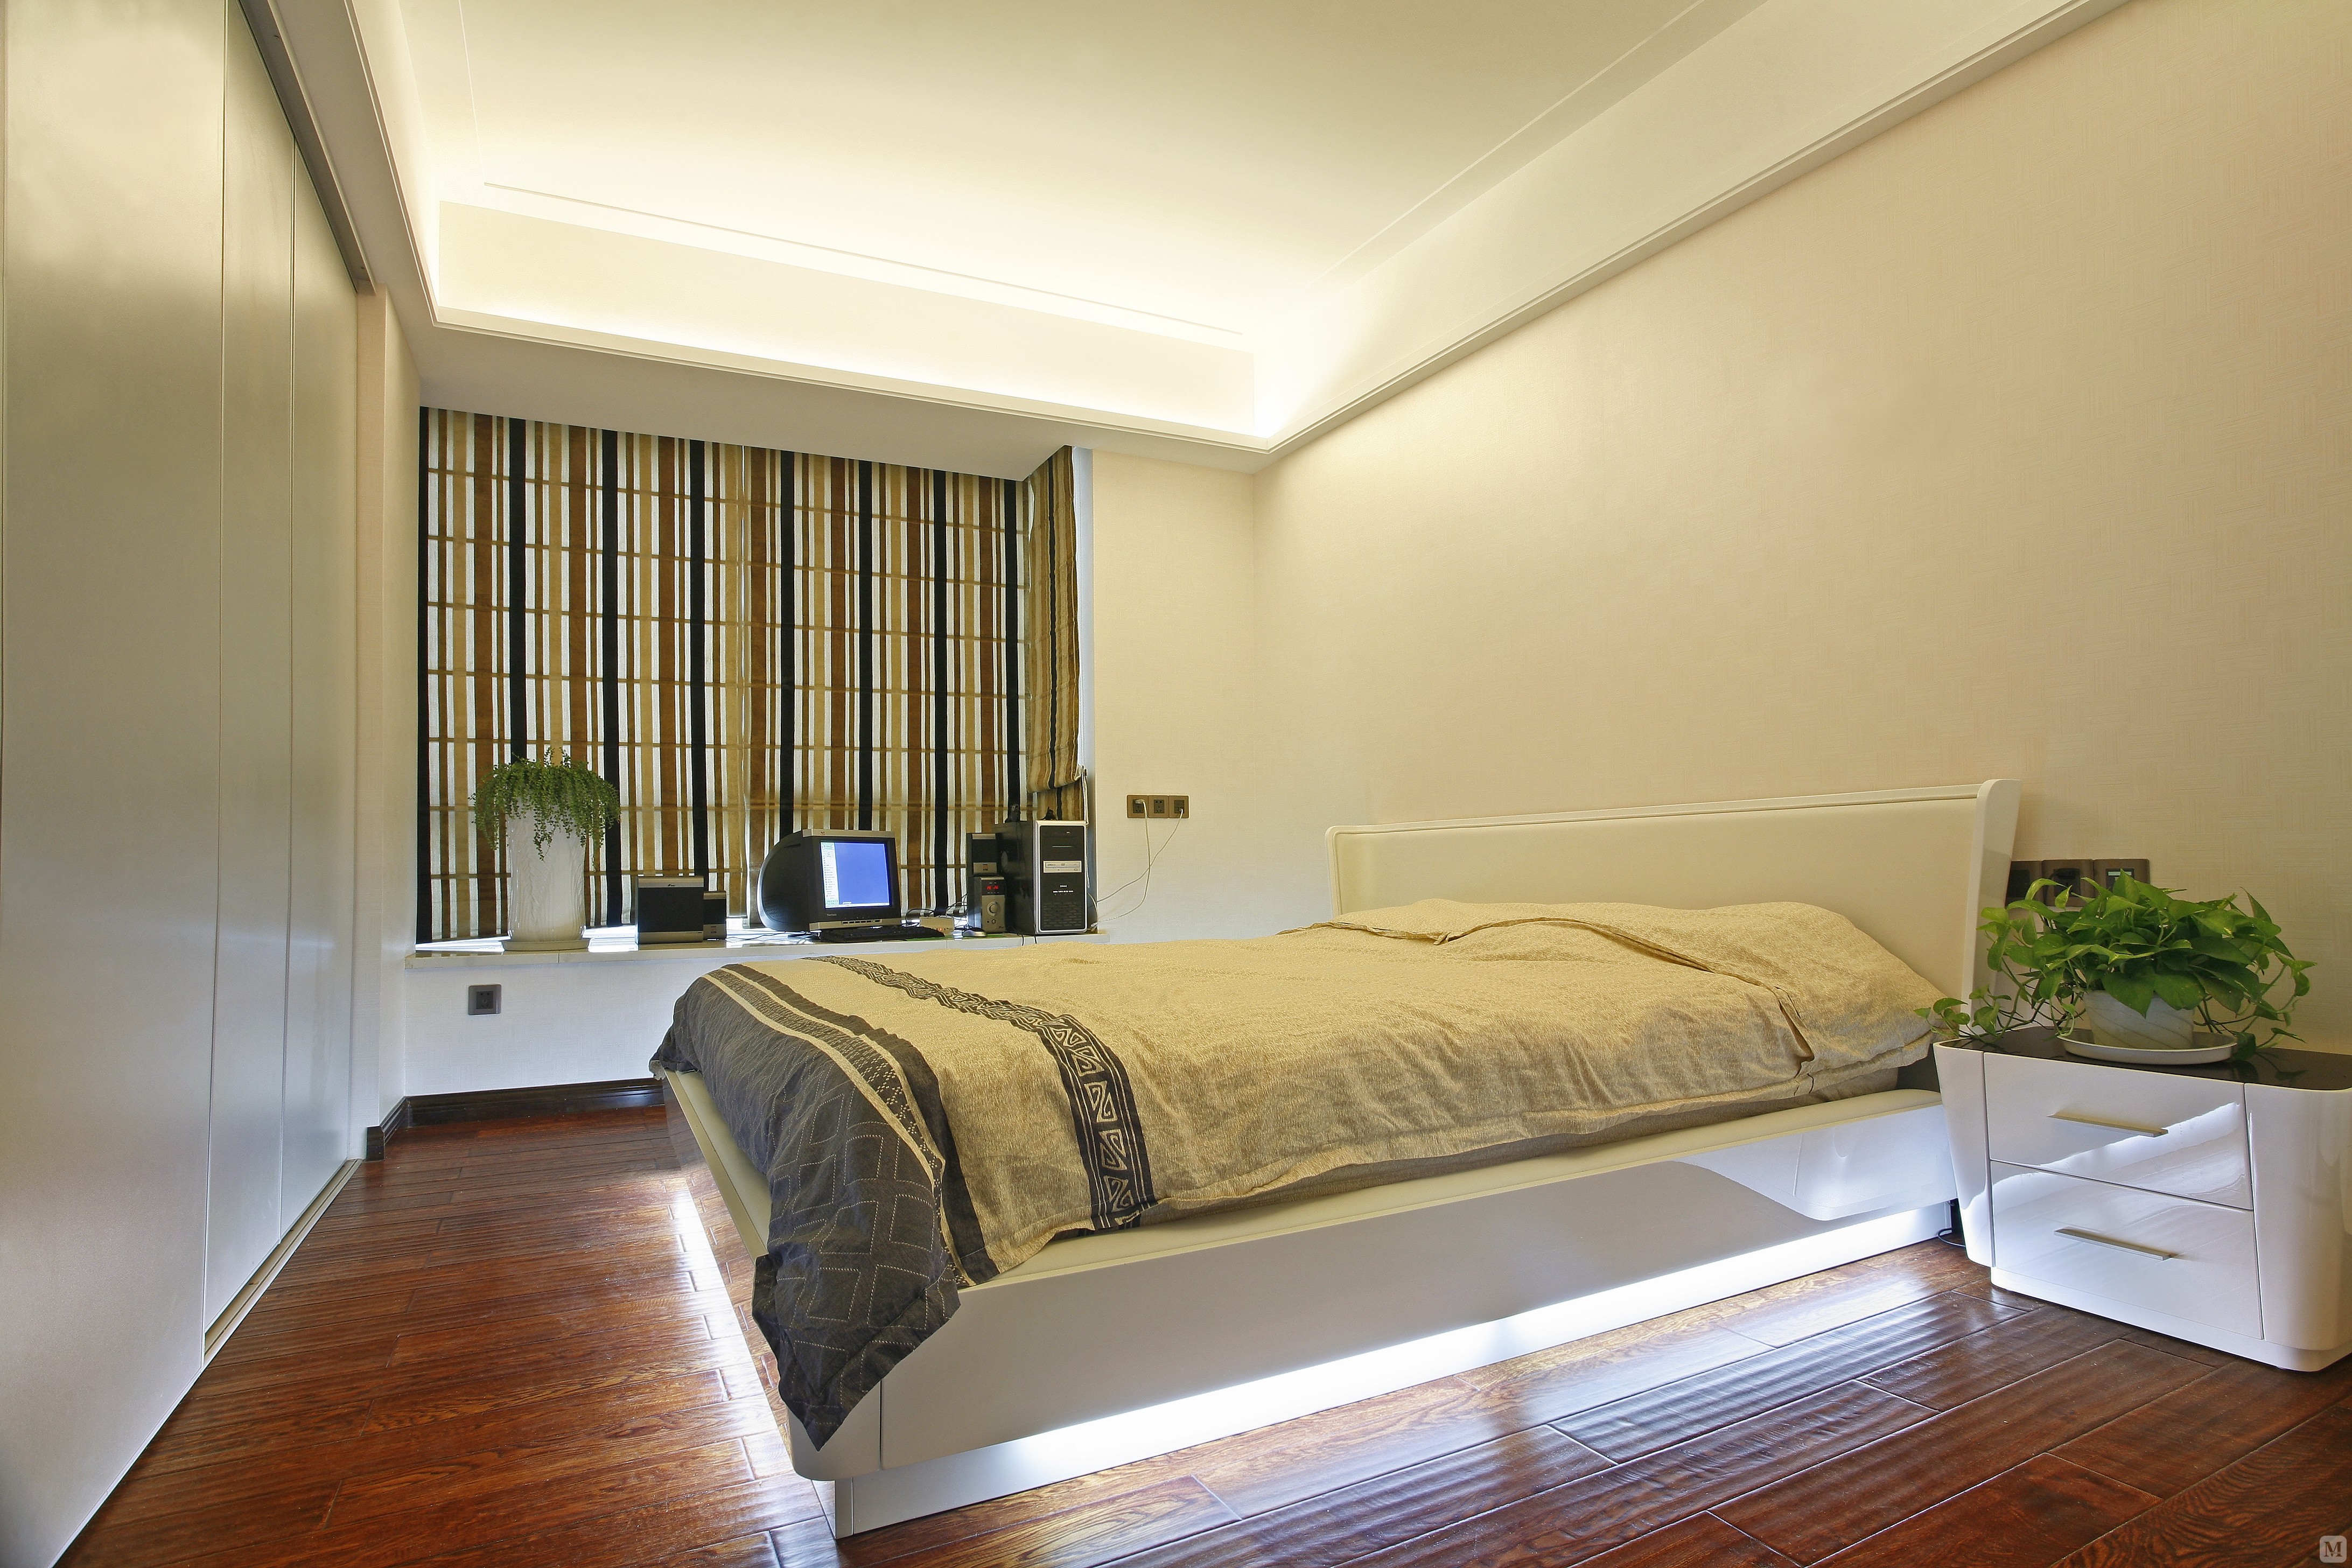 简欧风格的卧室中我们将居室设计的非常的通透，强调了室内空间的宽敞。简欧风格是欧式风格演变而来的，采用了现代化的元素加入其中将其变得非常的简单。在室内处理方面采用舒适的床饰，引入最大限度的自然光。让流畅的感觉与优雅并存，将欧式风格现代化。